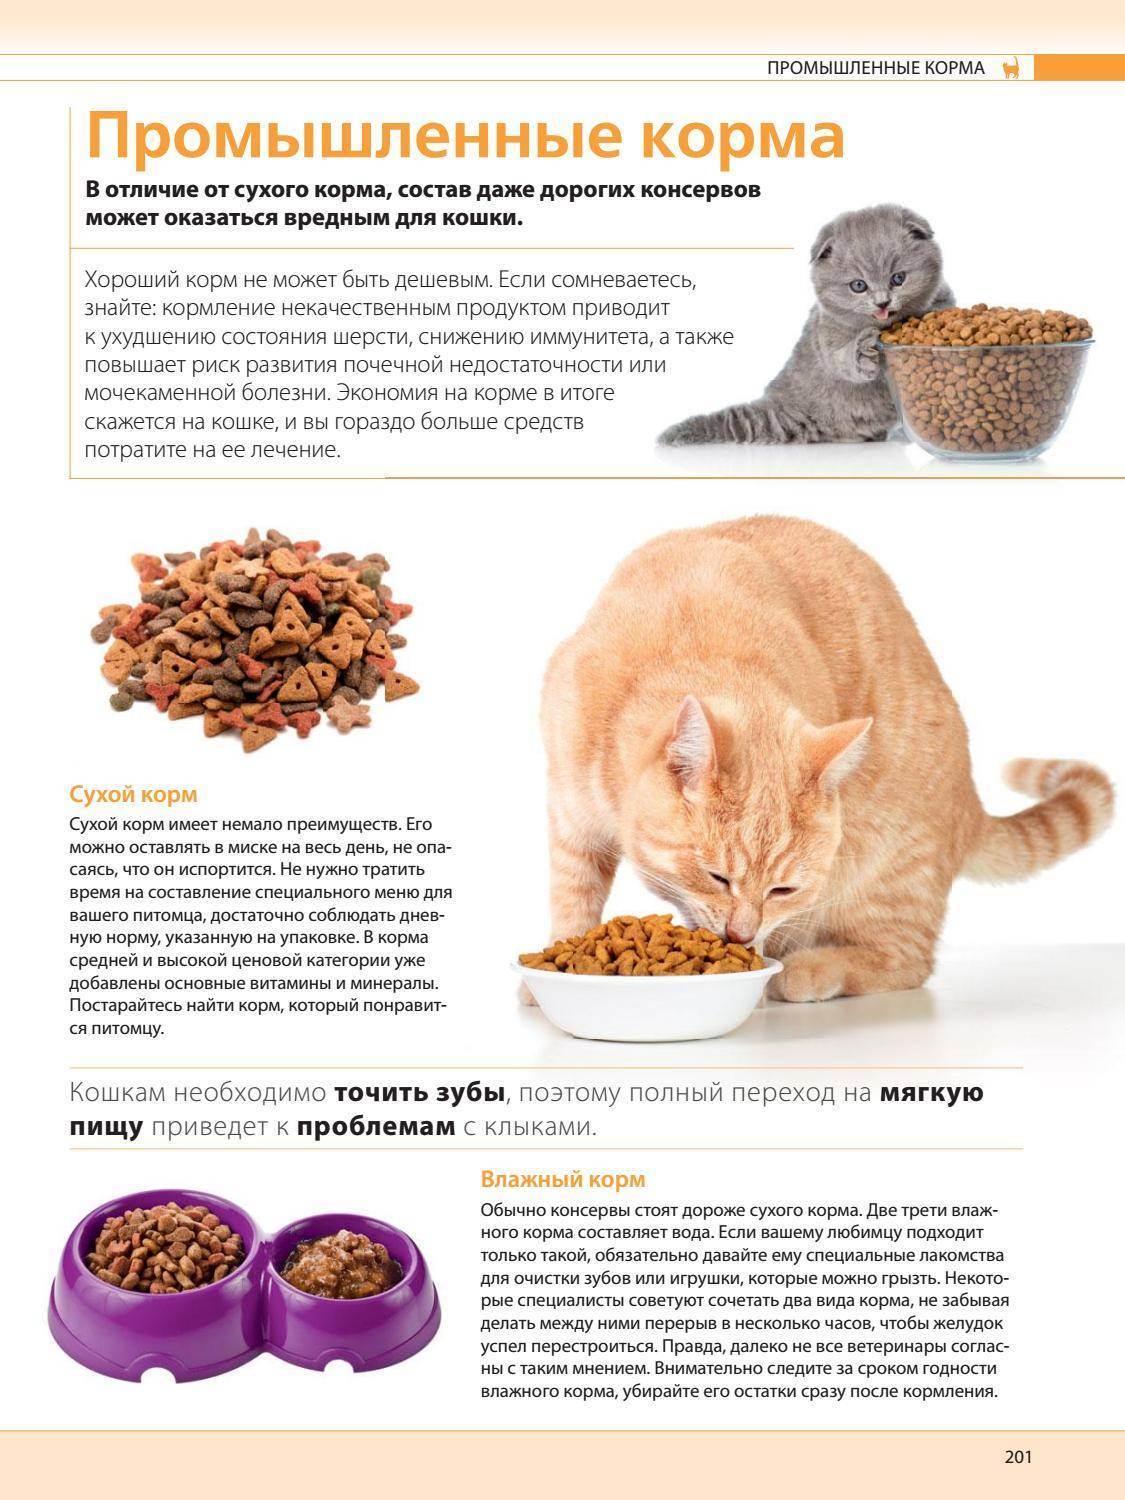 Как правильно кормить кошку: советы, сколько раз в день кормить сухим, влажным и натуральным кормом